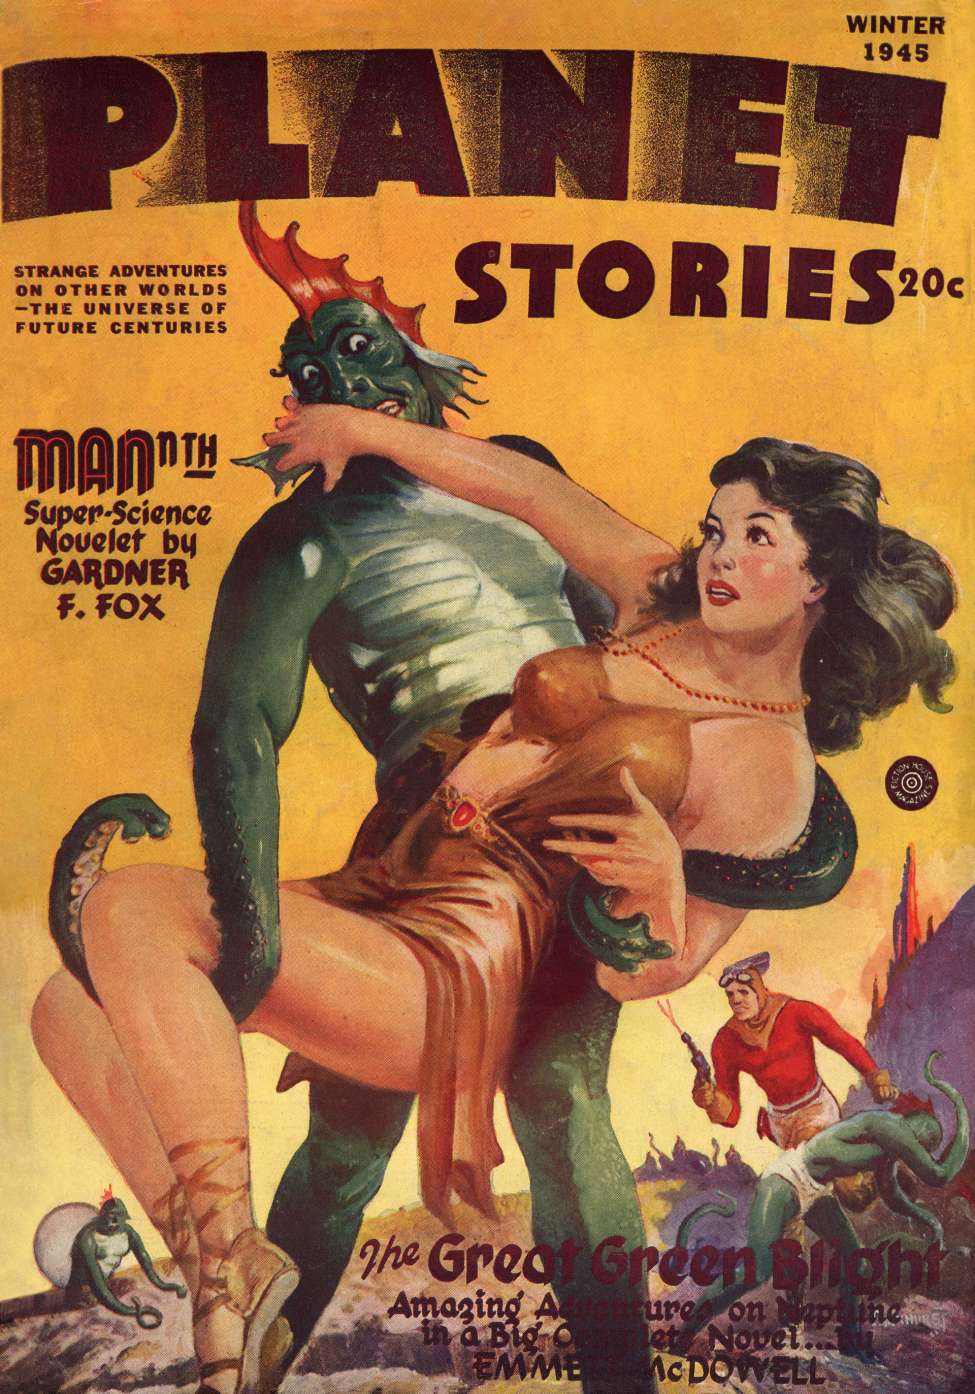 Book Cover For Planet Stories v3 1 - The Great Green Blight - Emmett McDowell